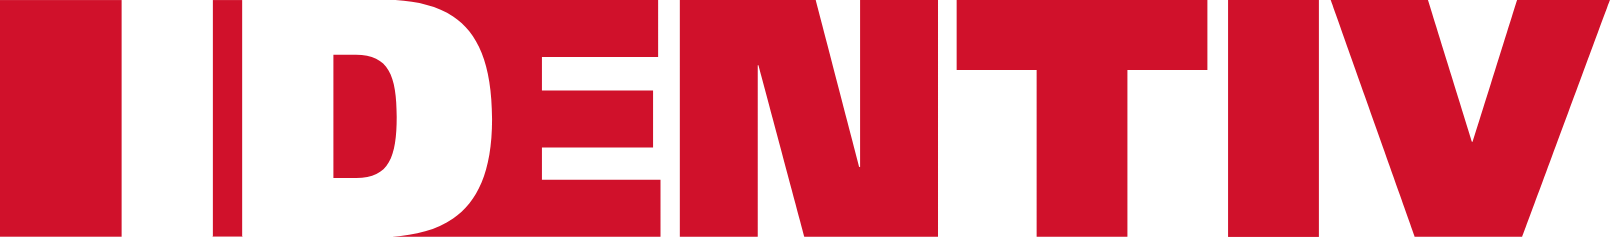 Identiv logo large (transparent PNG)